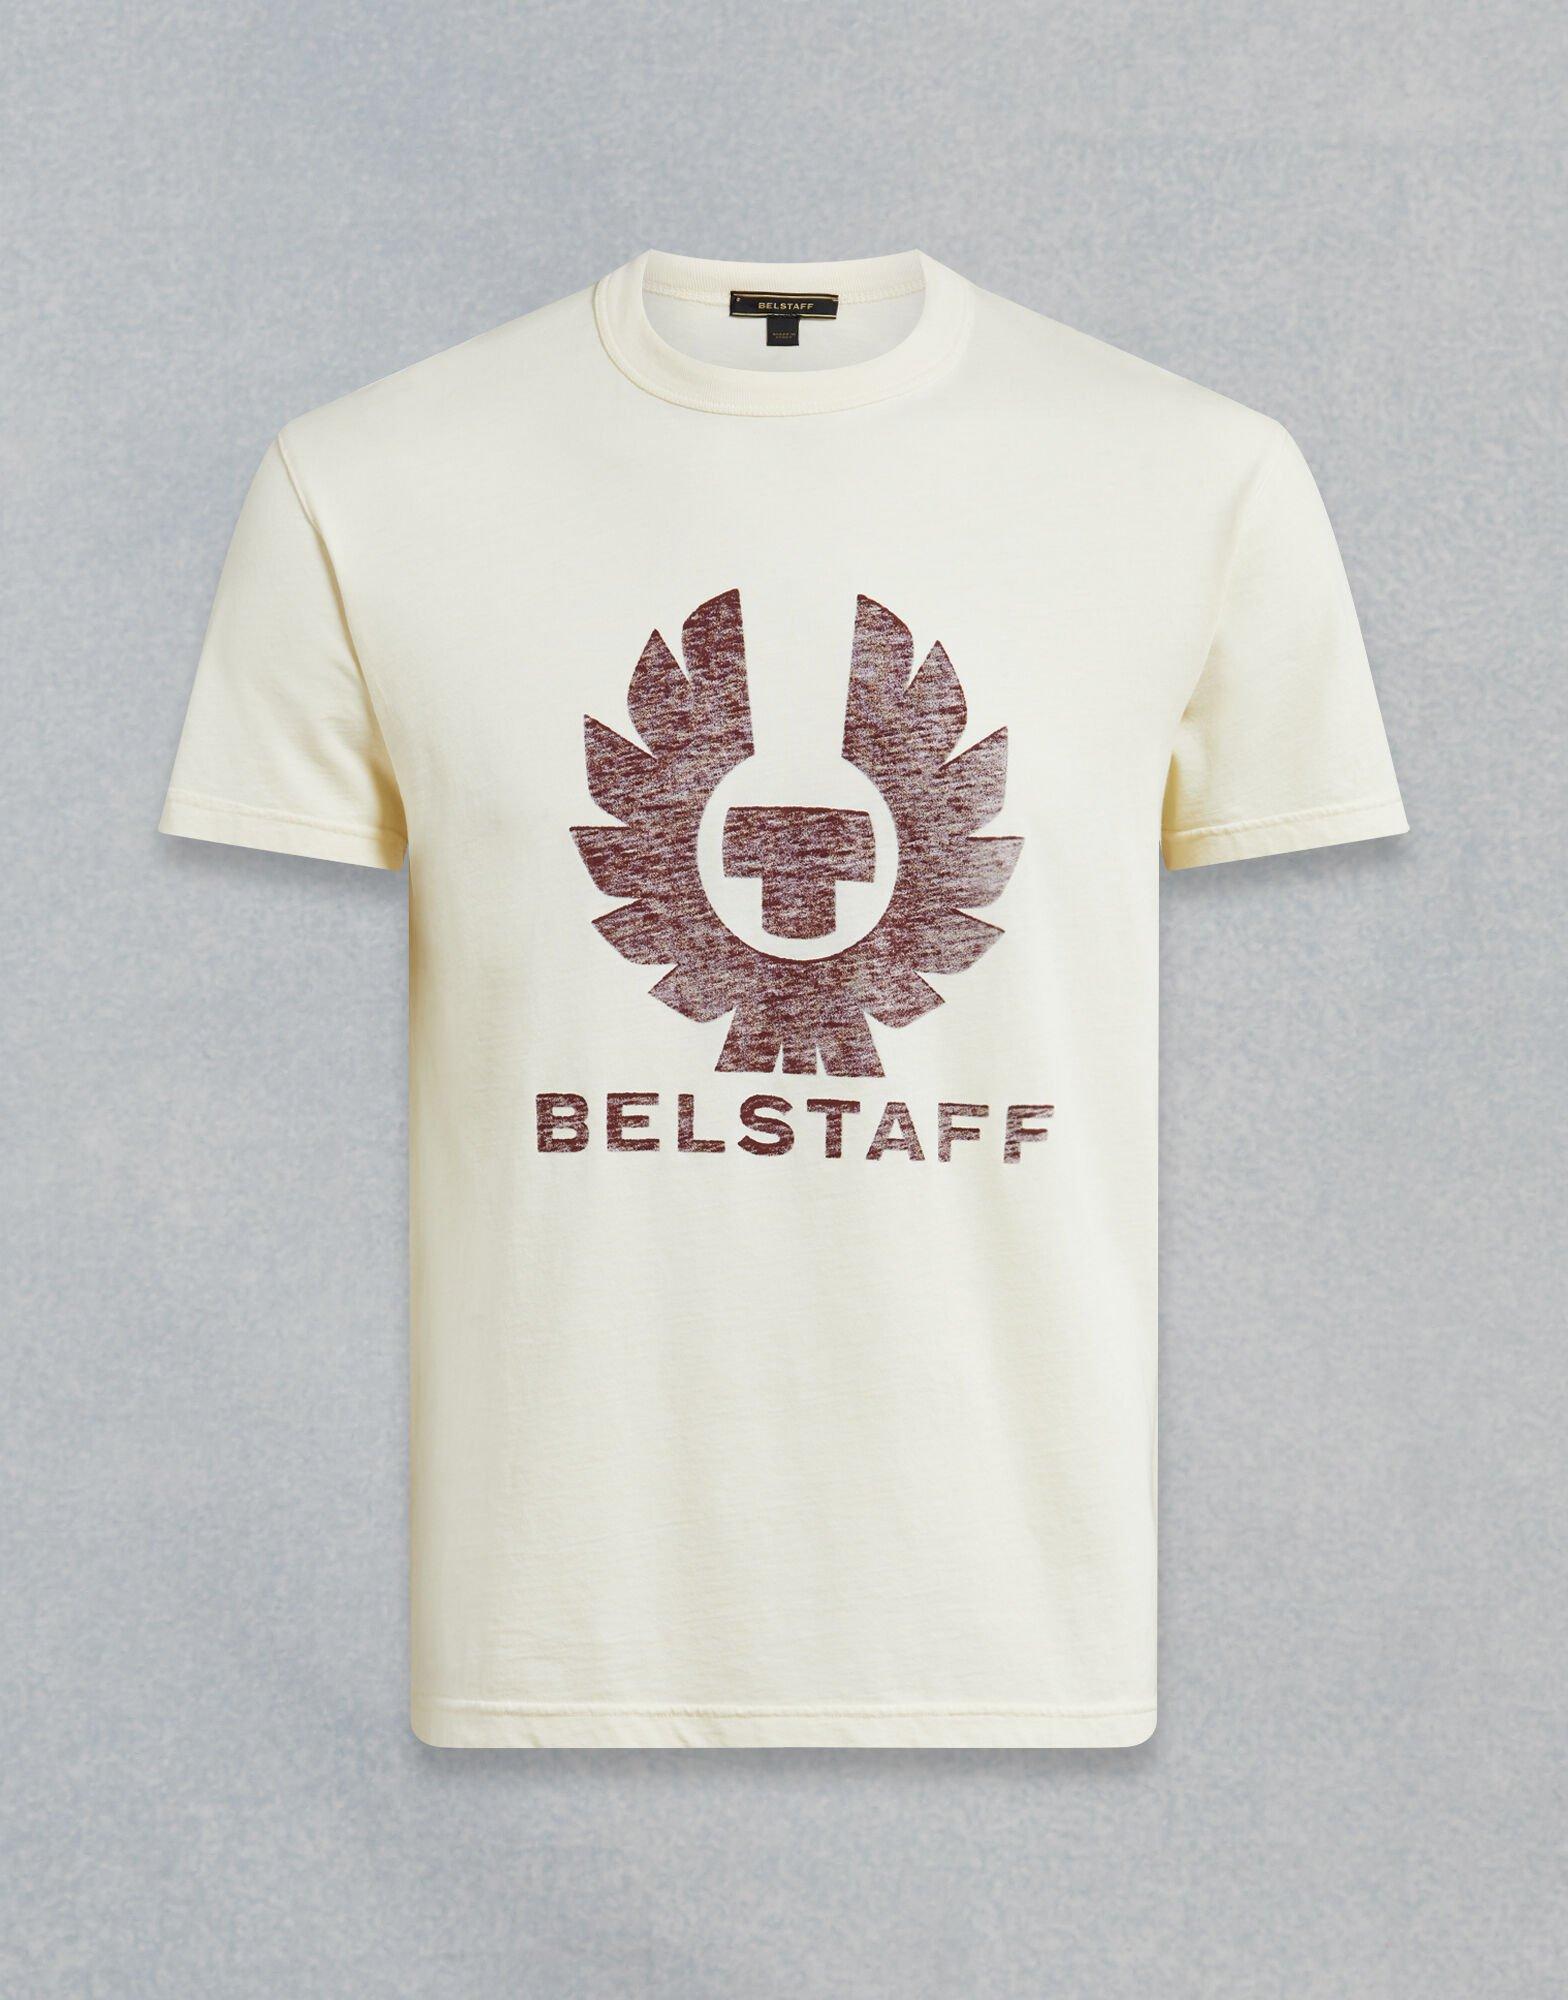 Belstaff Cotton Coteland 2.0 T-shirt for Men - Lyst